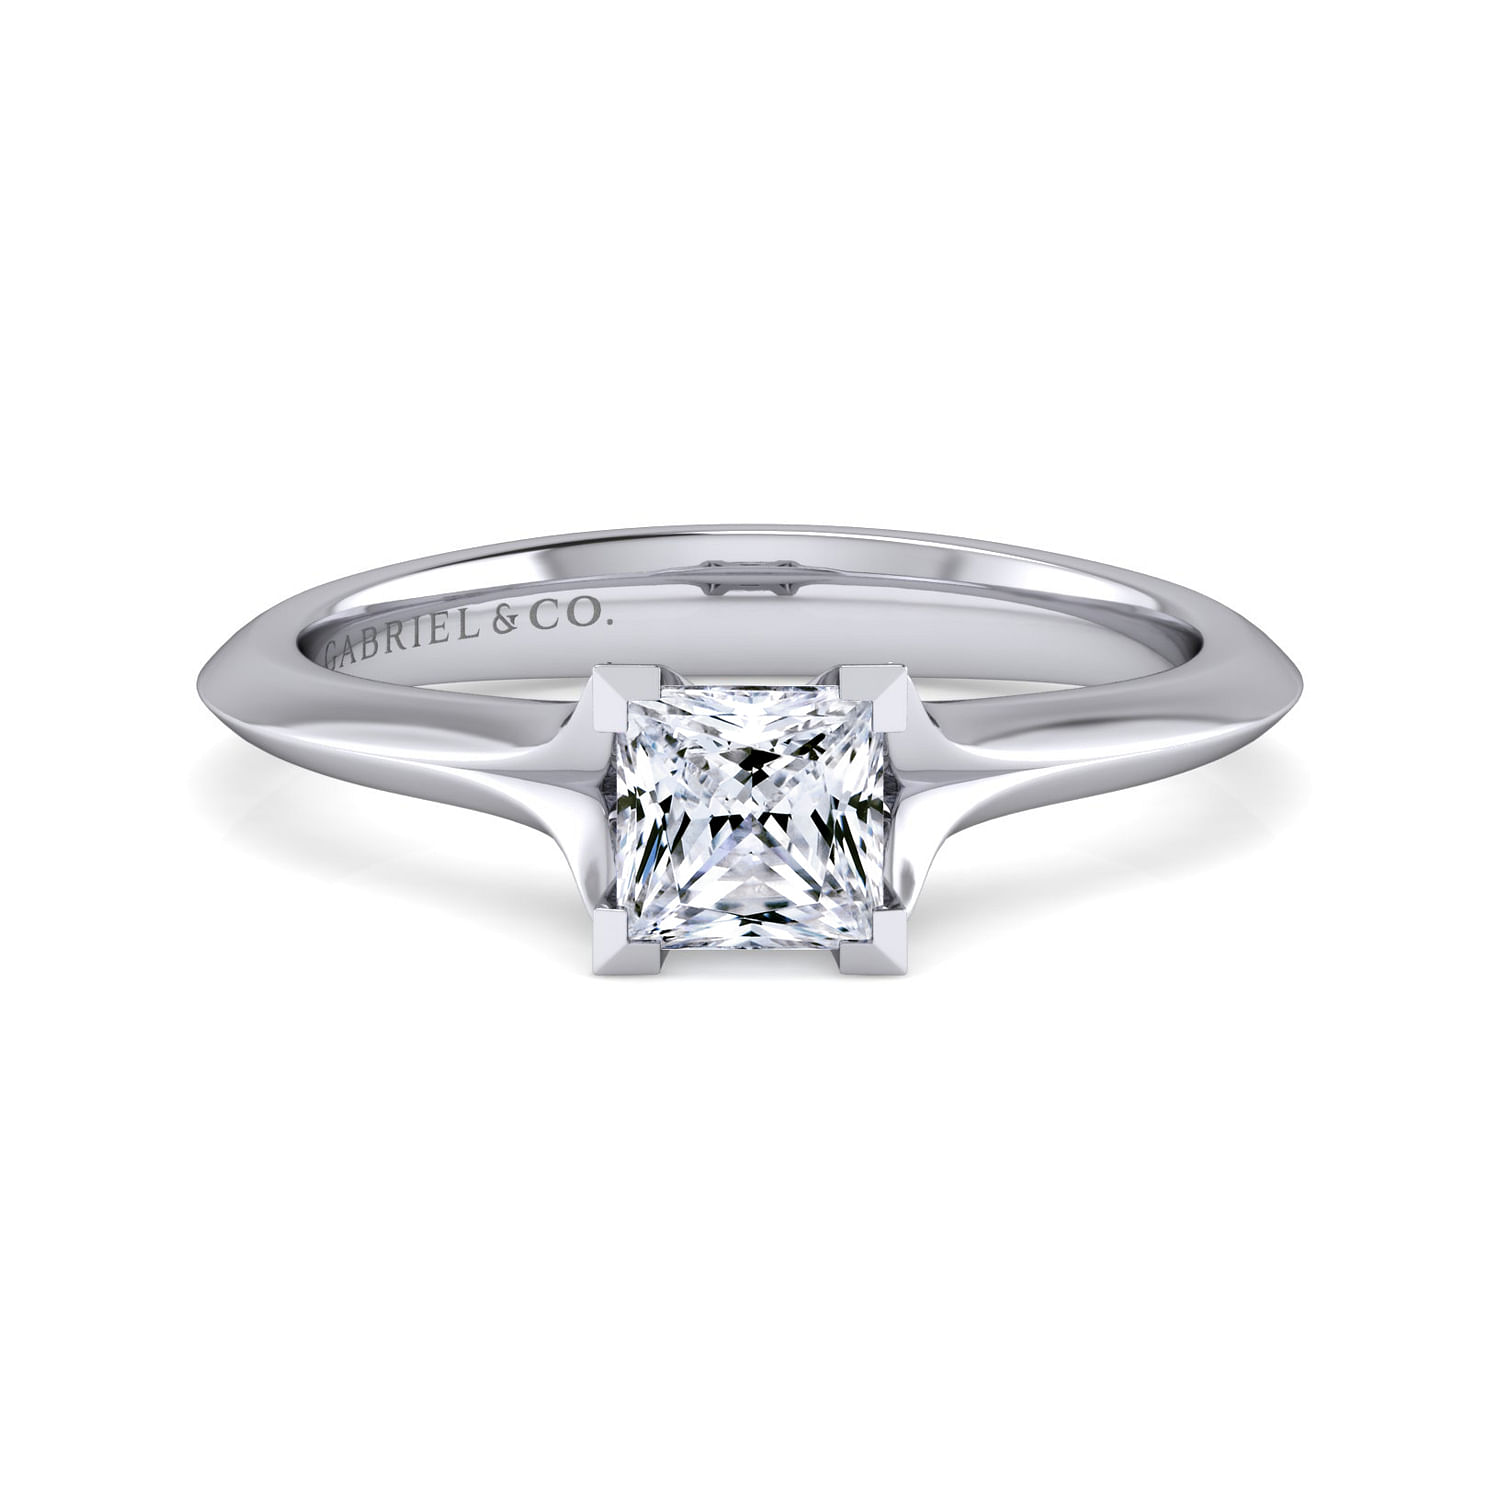 Ellis - 14K White Gold Princess Cut Diamond Engagement Ring